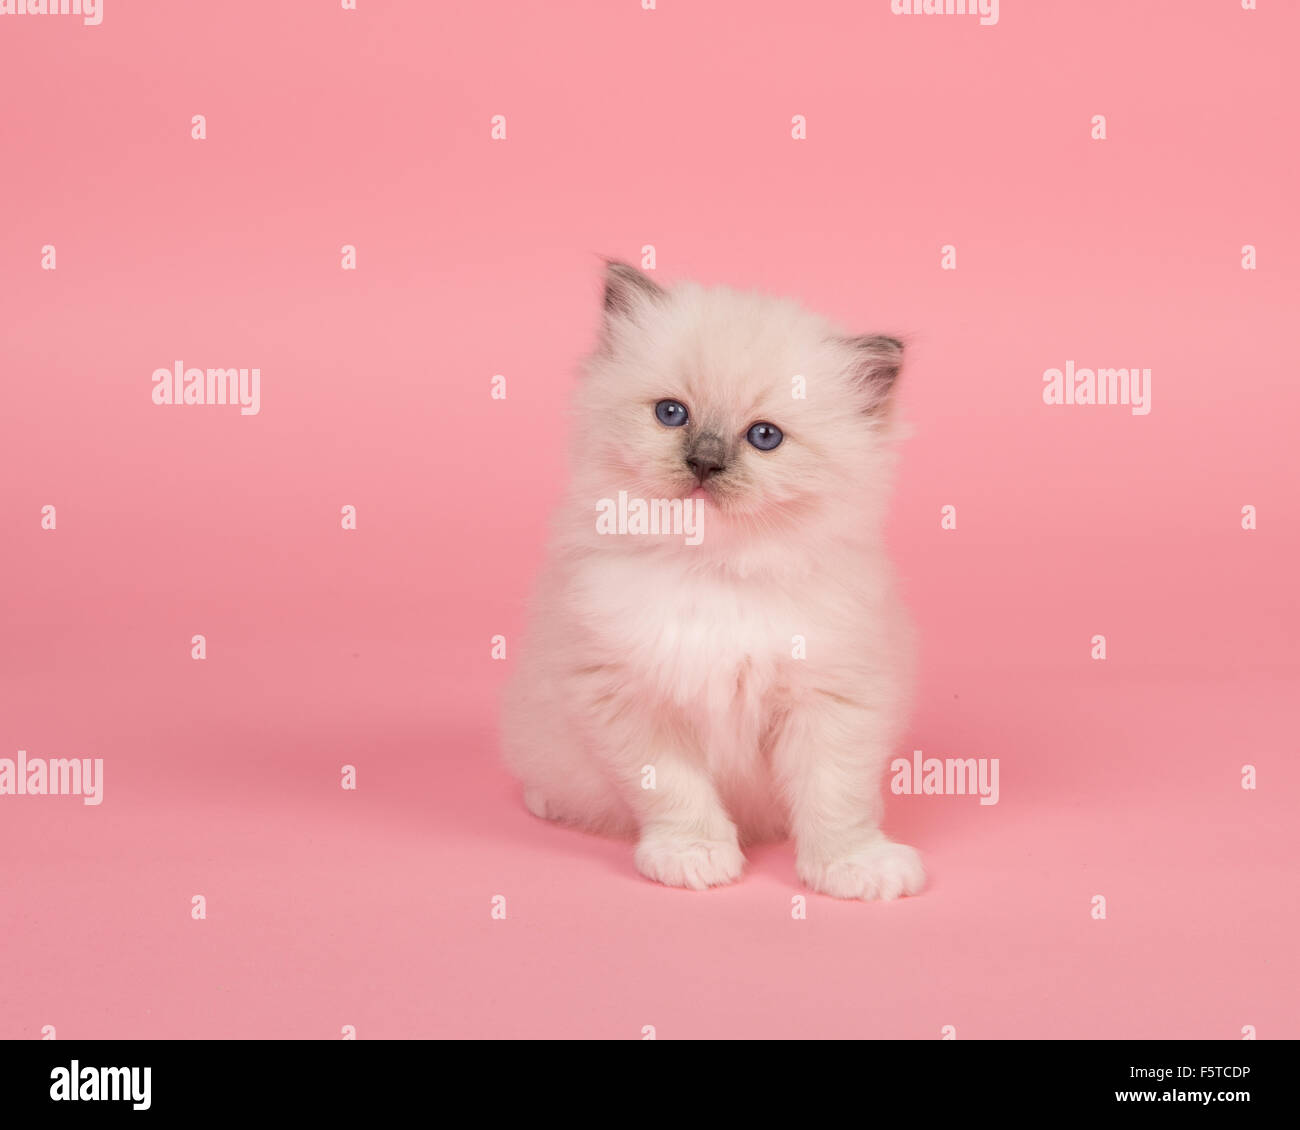 Süße Ragdoll Baby Katze auf einem rosa Hintergrund Stockfotografie - Alamy